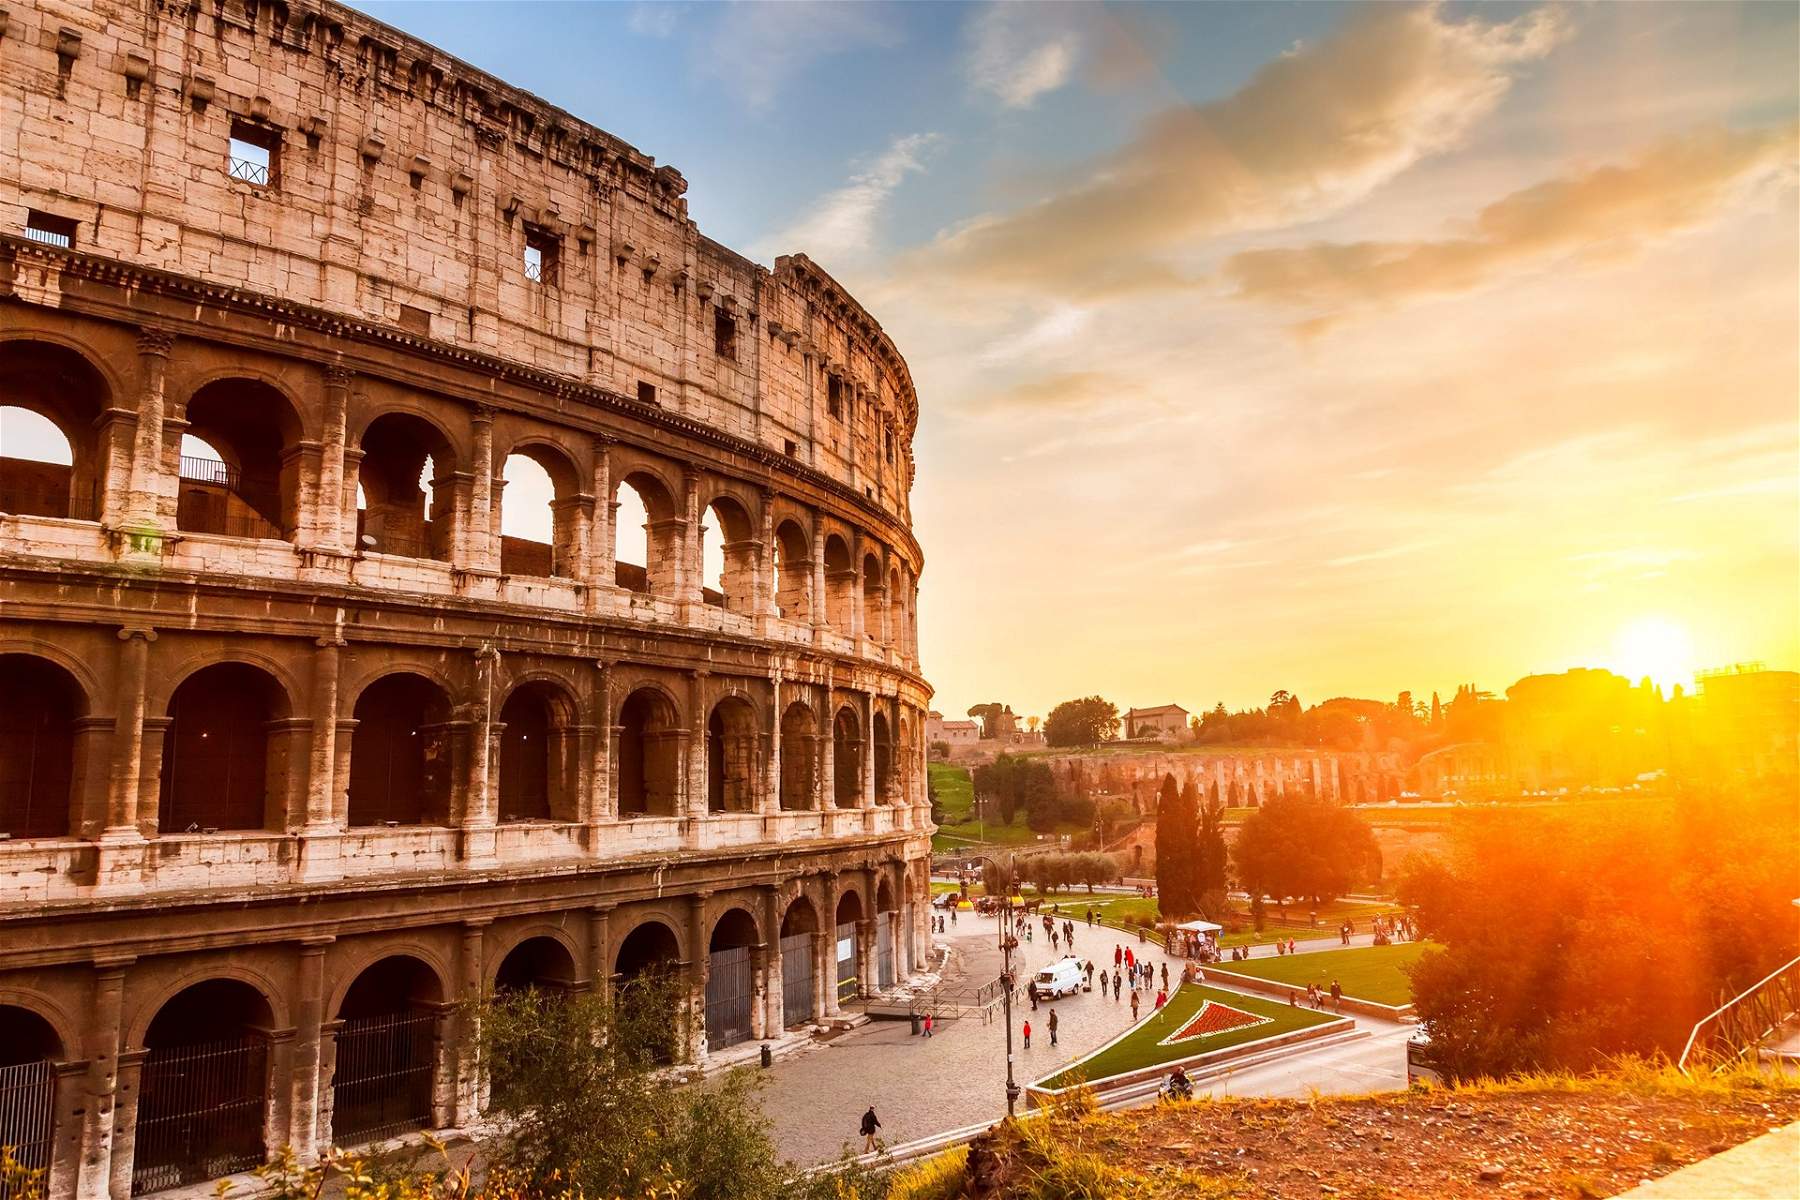 Colosseum, bientôt un service de billetterie renouvelé. Signature du protocole entre le MiC et l'Anac 